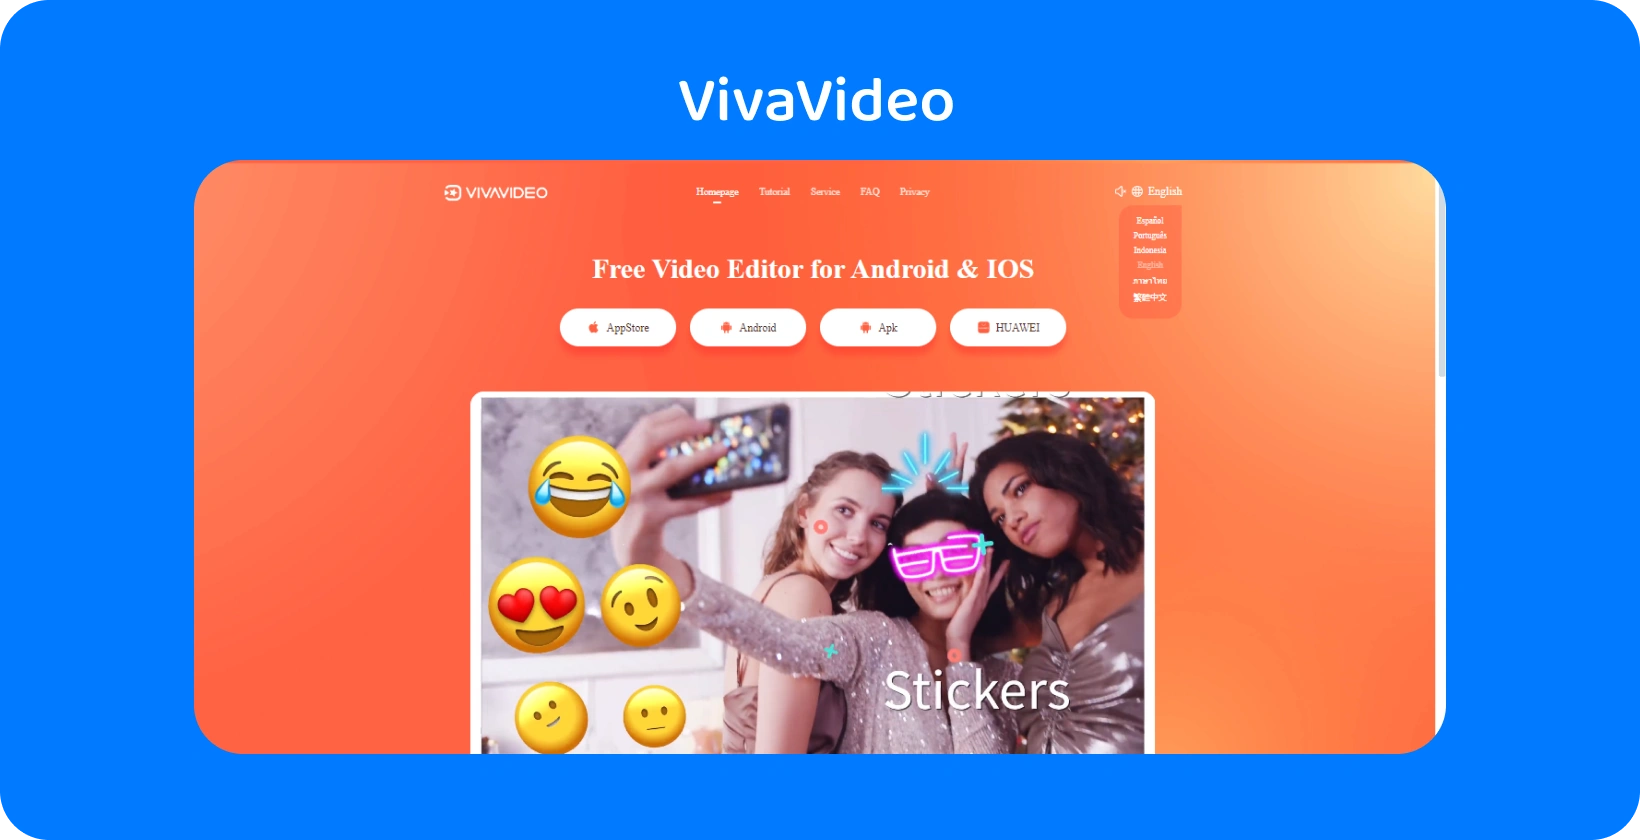 VivaVideo דף אפליקציה עם רקע כתום תוסס, המציג תכונות מדבקות לשיפור סרטונים ב- Android וב- iOS.
